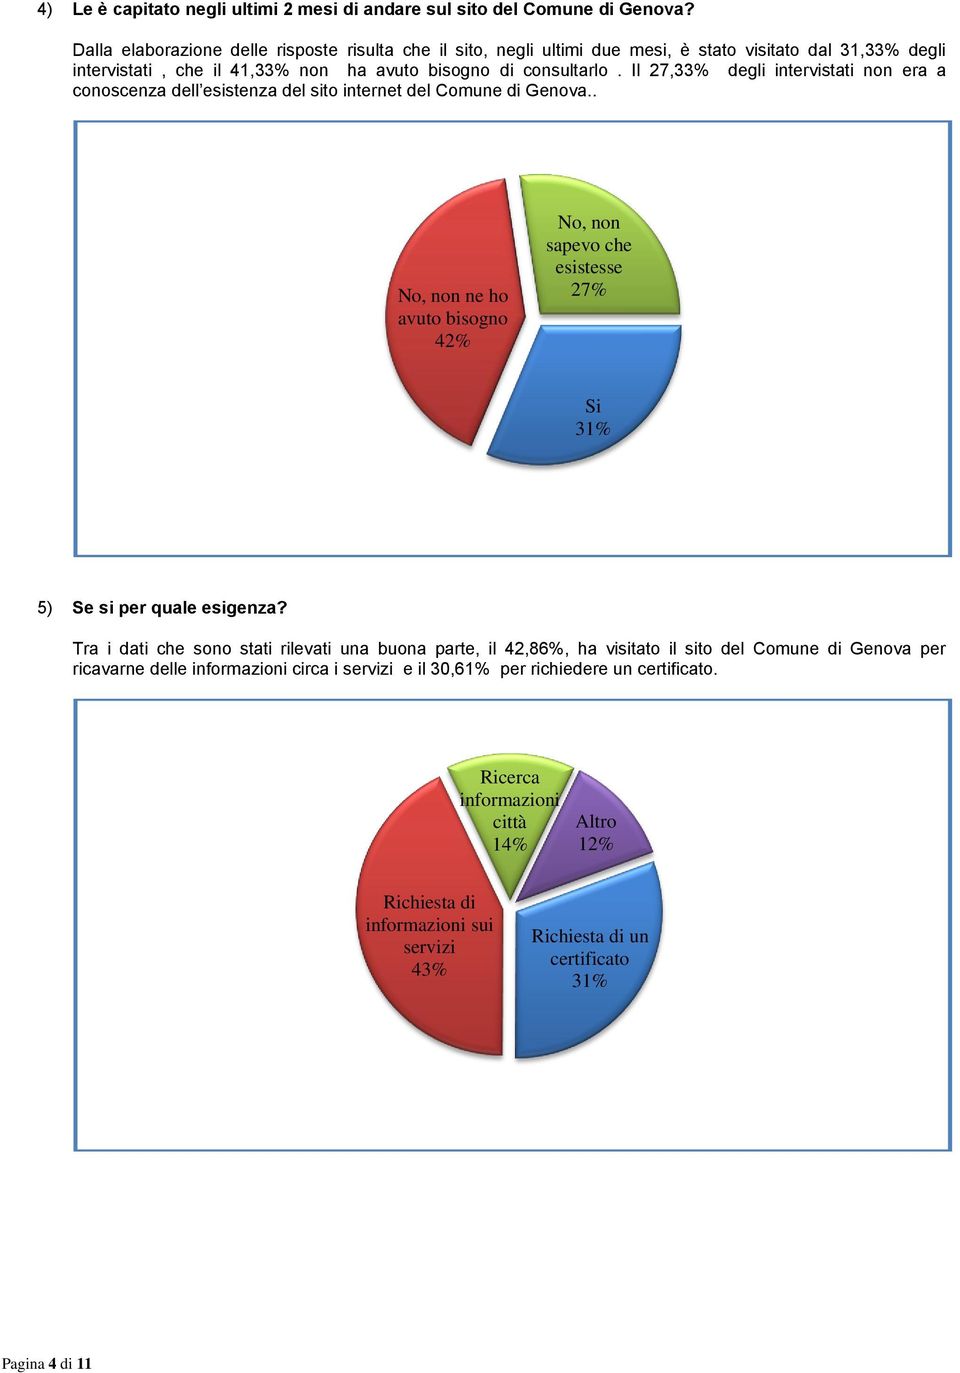 Il 27,33% degli intervistati non era a conoscenza dell esistenza del sito internet del Comune di Genova.